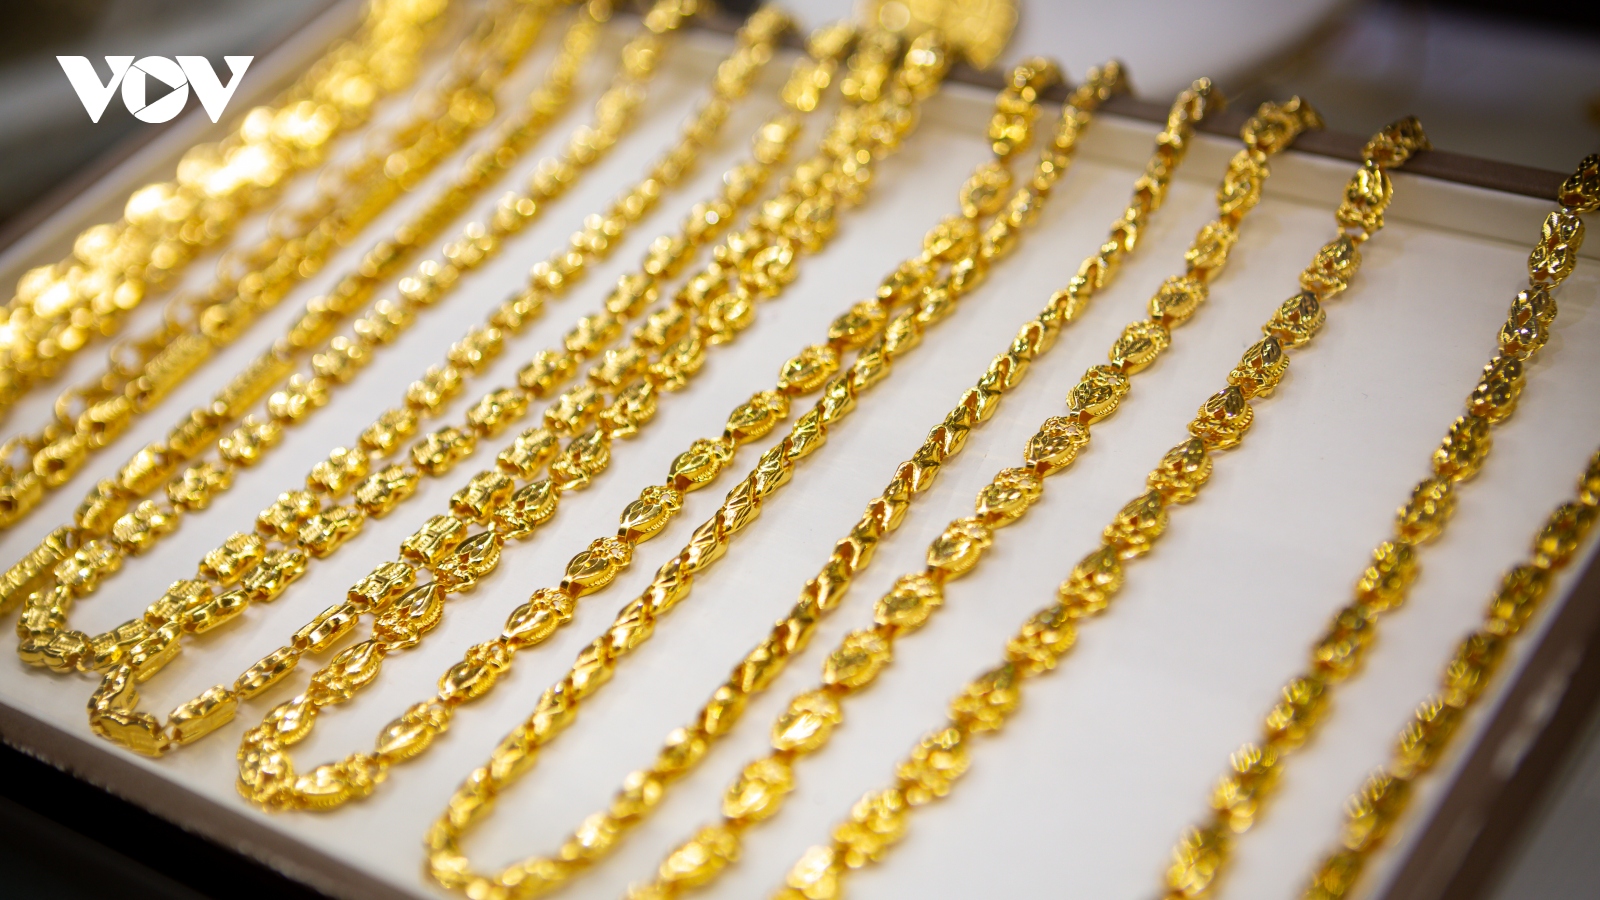 Giá vàng hôm nay 16/3: Vàng SJC niêm yết ở mức 81,5 triệu đồng/lượng